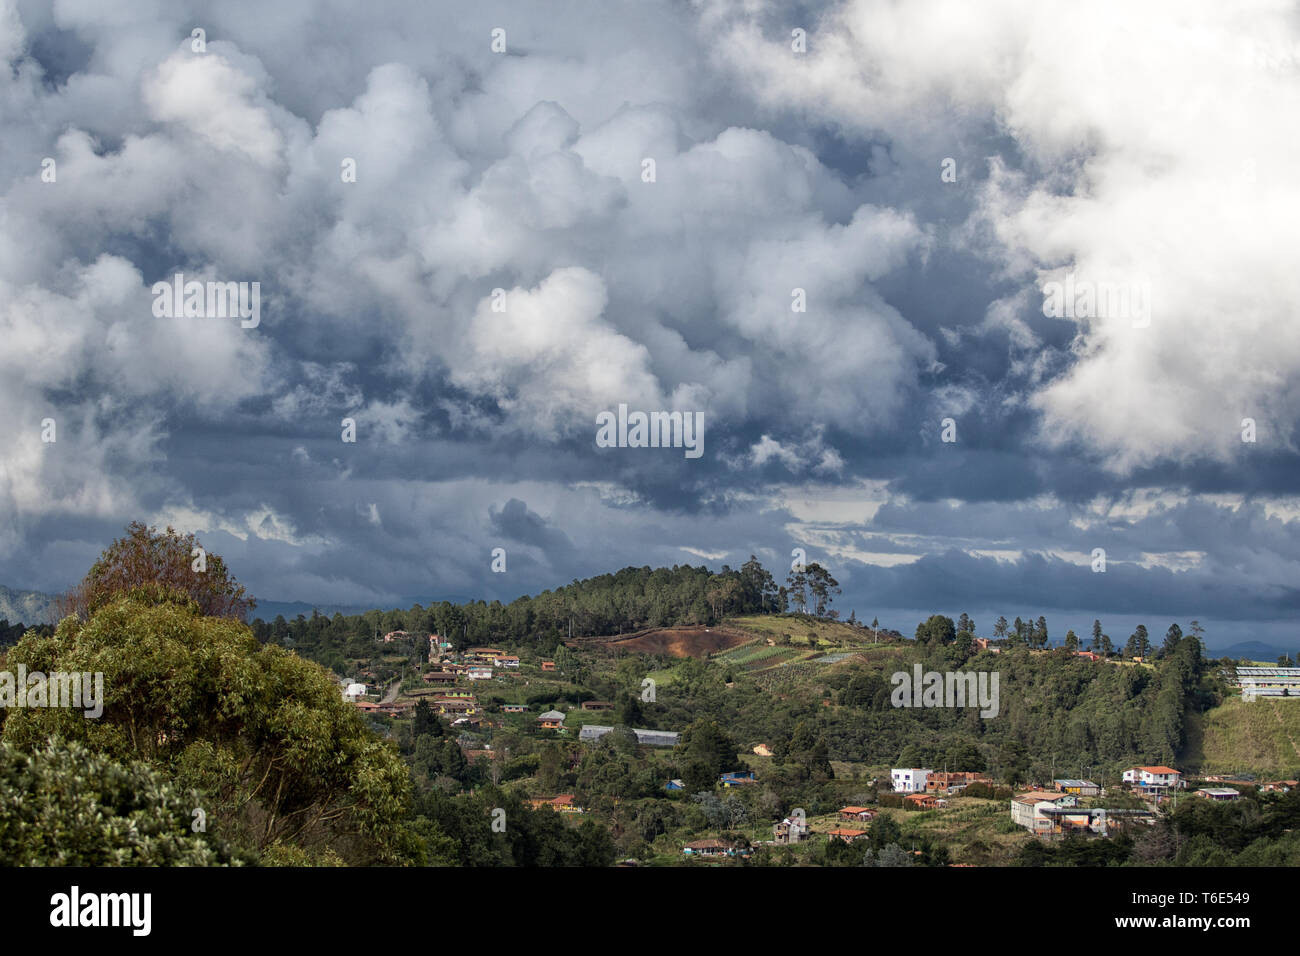 Cielo nublado sobre Santa Sra. Elana, Medellín, Colombia Foto de stock